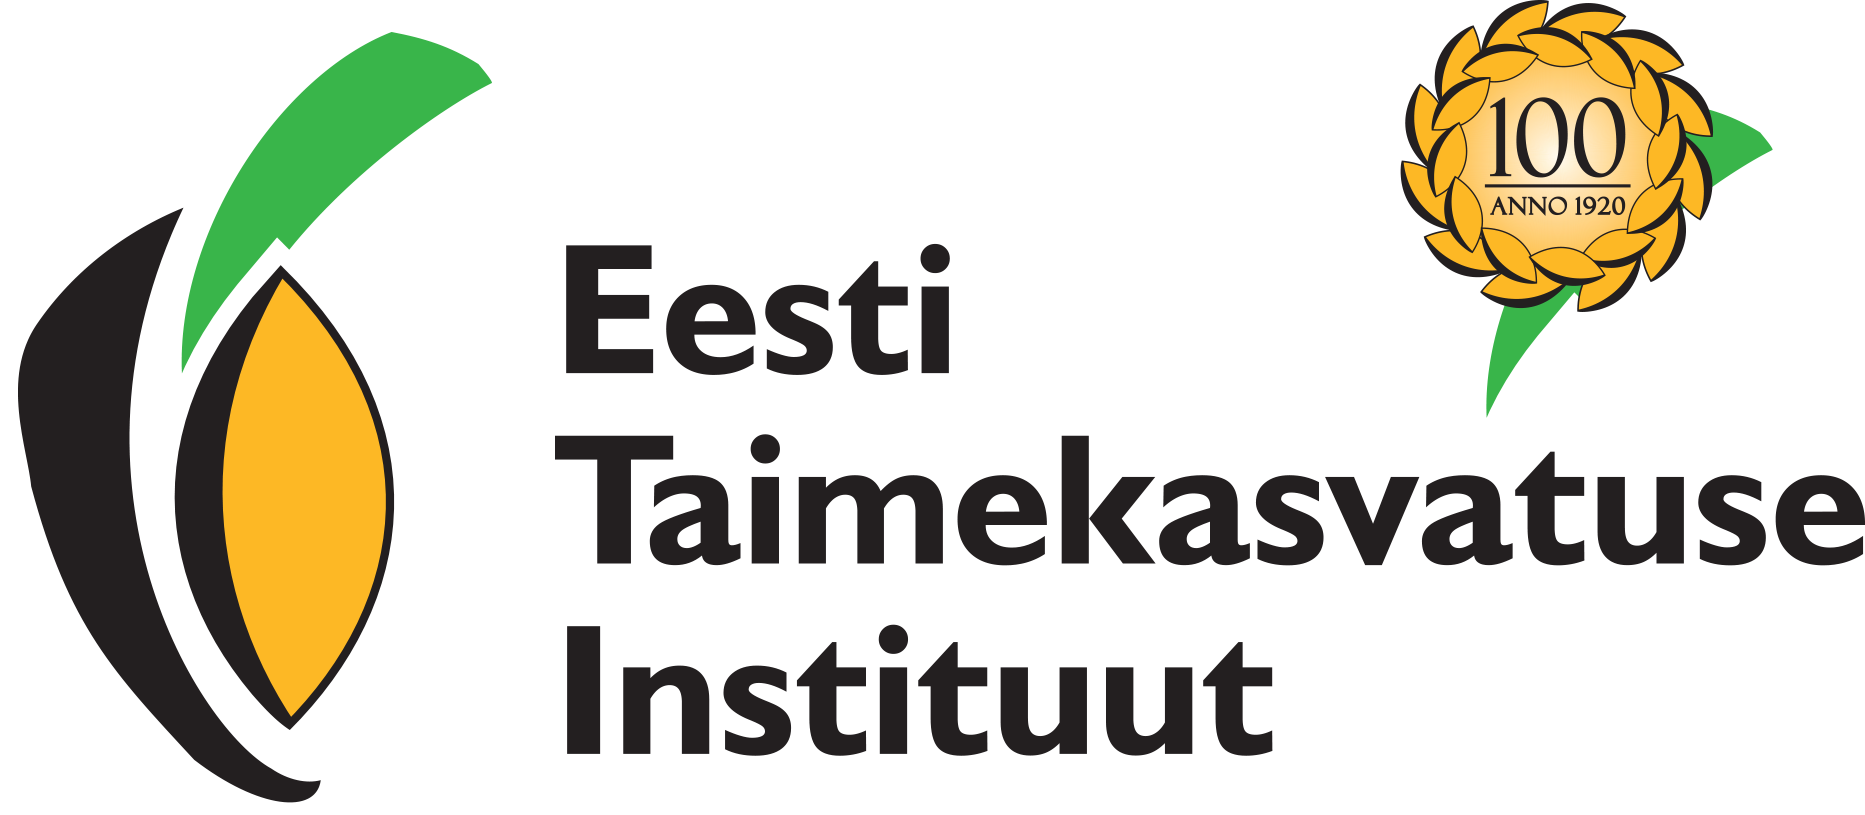 Estonian Crop Research Institute